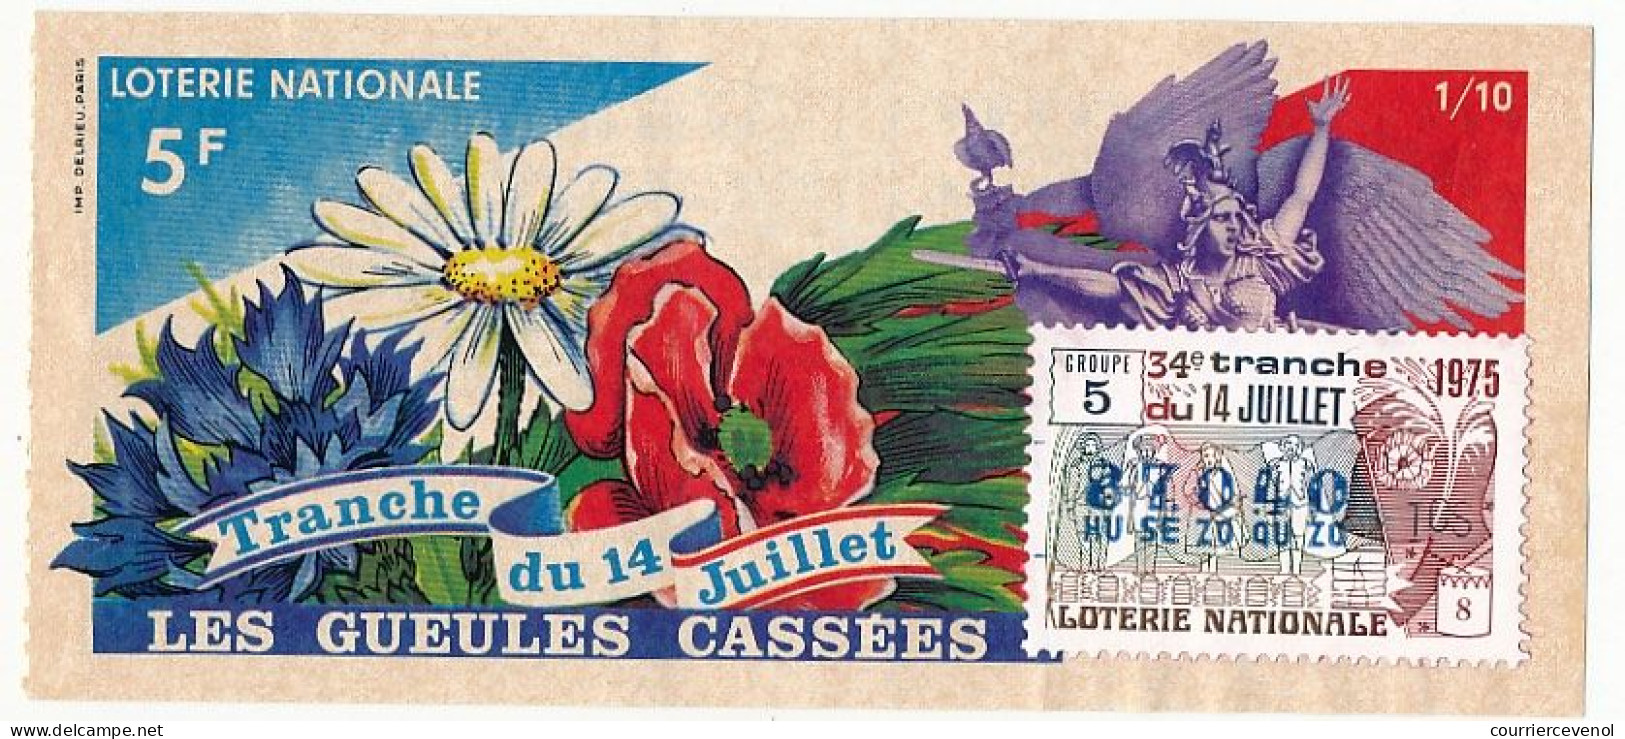 FRANCE - Loterie Nationale - Tranche Du 14 Juillet - Gueules Cassées - 34ème Tranche 1975 1/10ème - Biglietti Della Lotteria